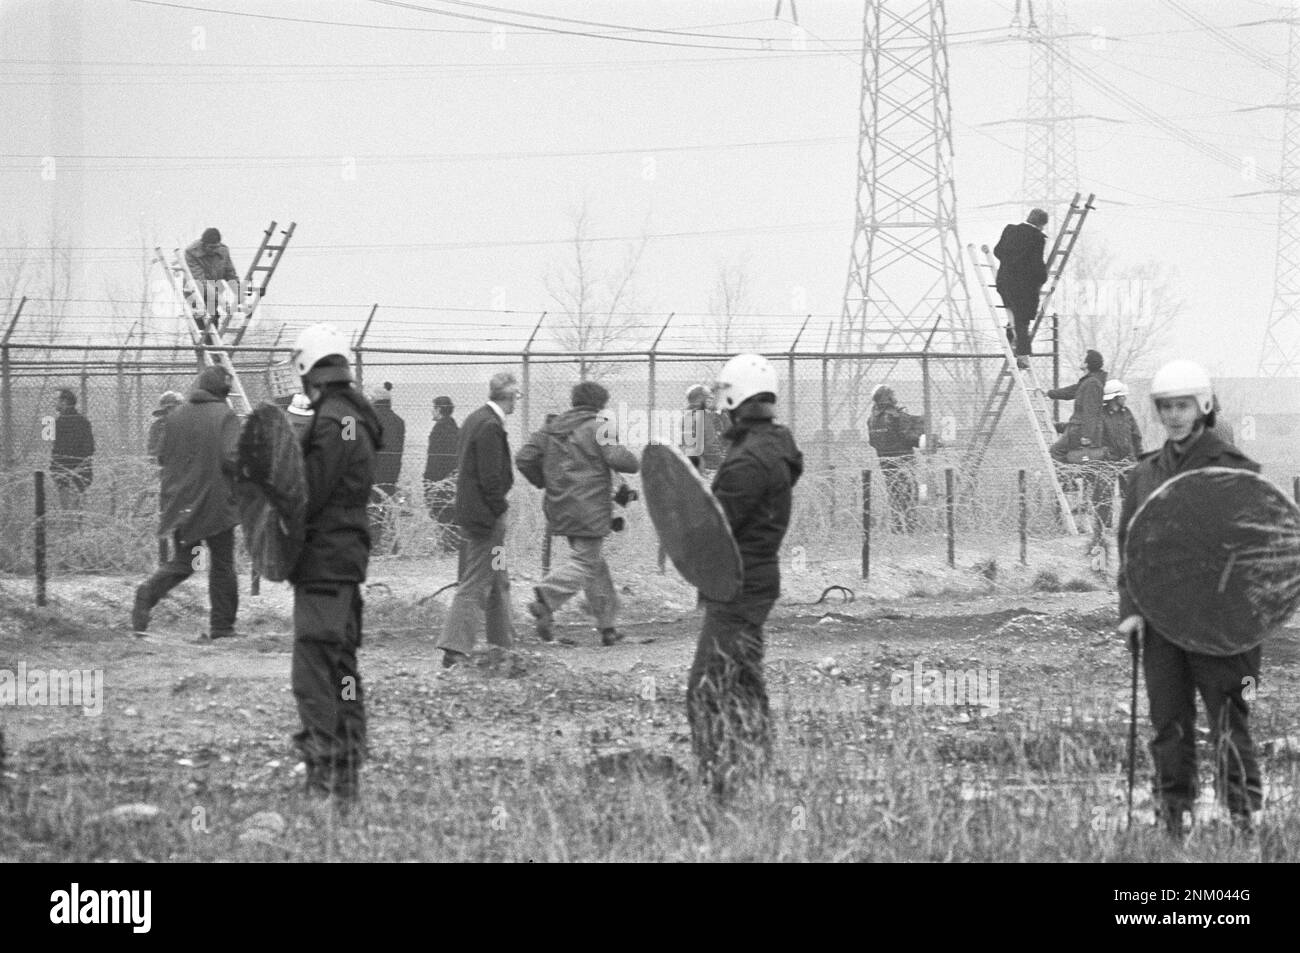 Paesi Bassi Storia: I gruppi di azione anti-energia nucleare bloccano l'accesso alla centrale nucleare di Borssele; l'unità mobile protegge i lavoratori che si arrampicano sulle recinzioni ca. Marzo 1980 Foto Stock